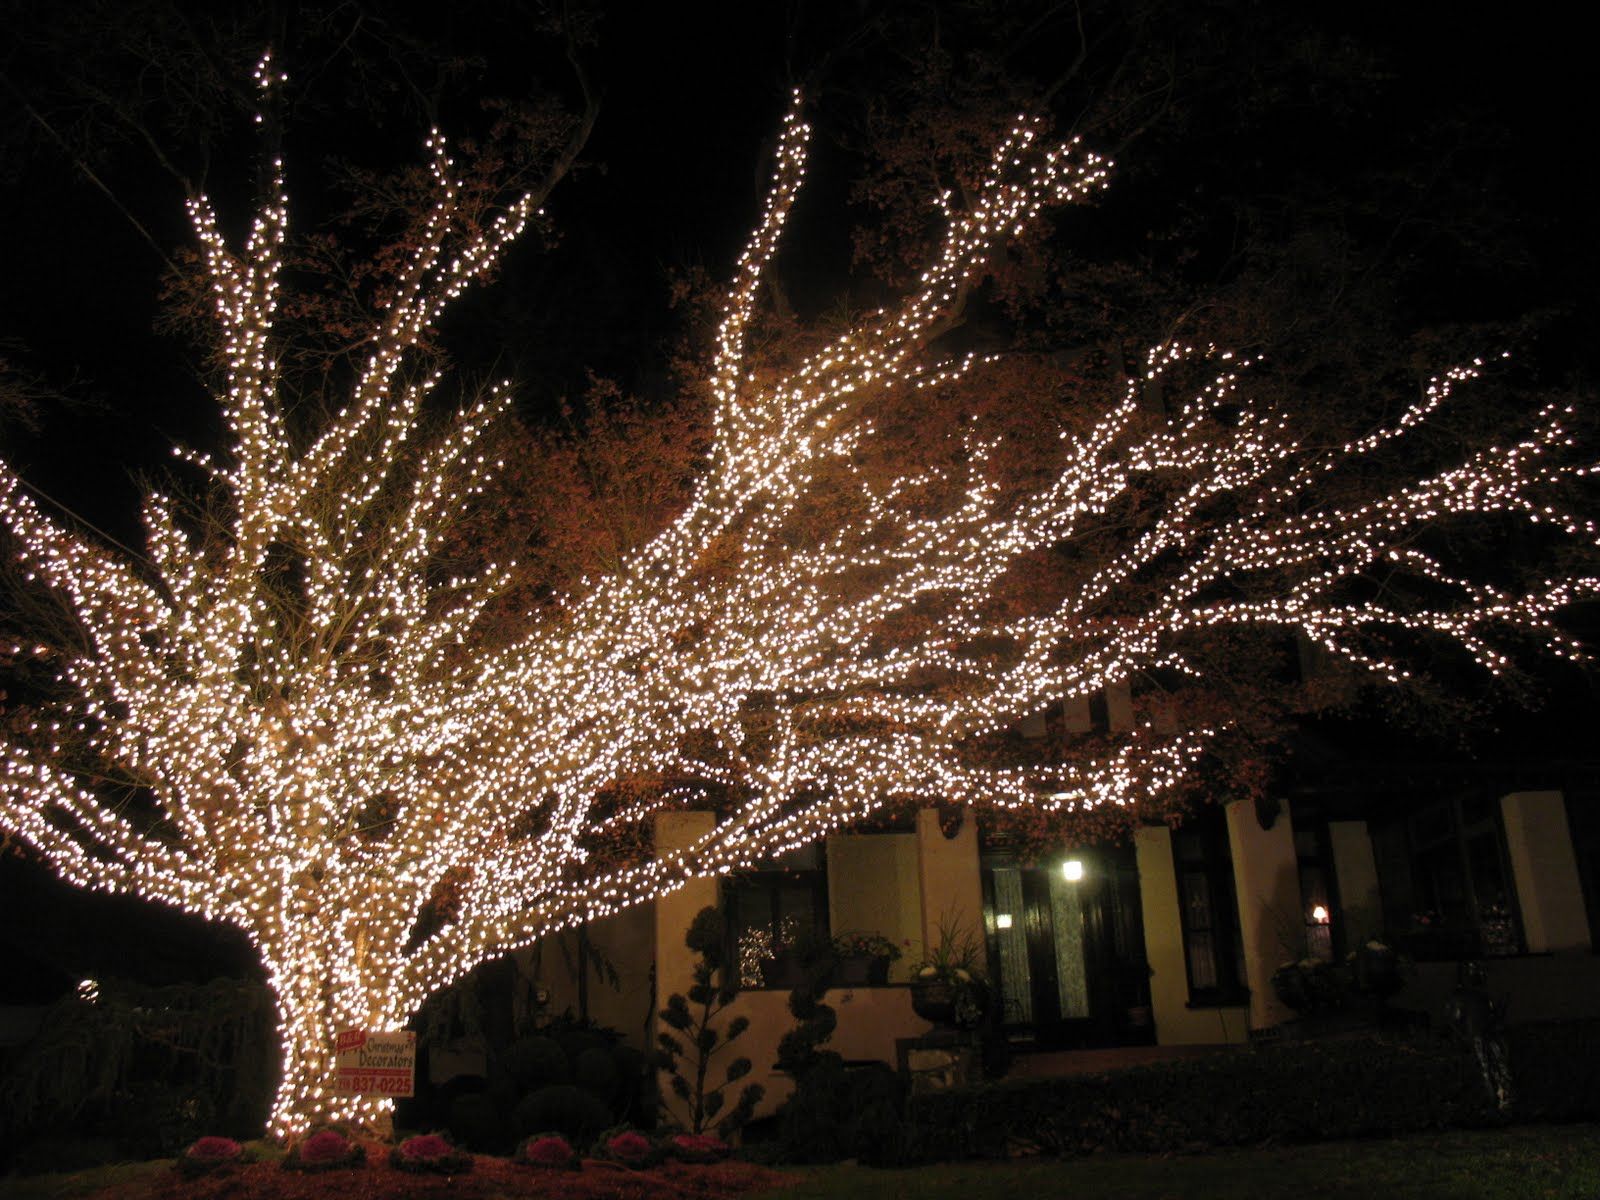 street tree lights | Tree Lights | Pinterest